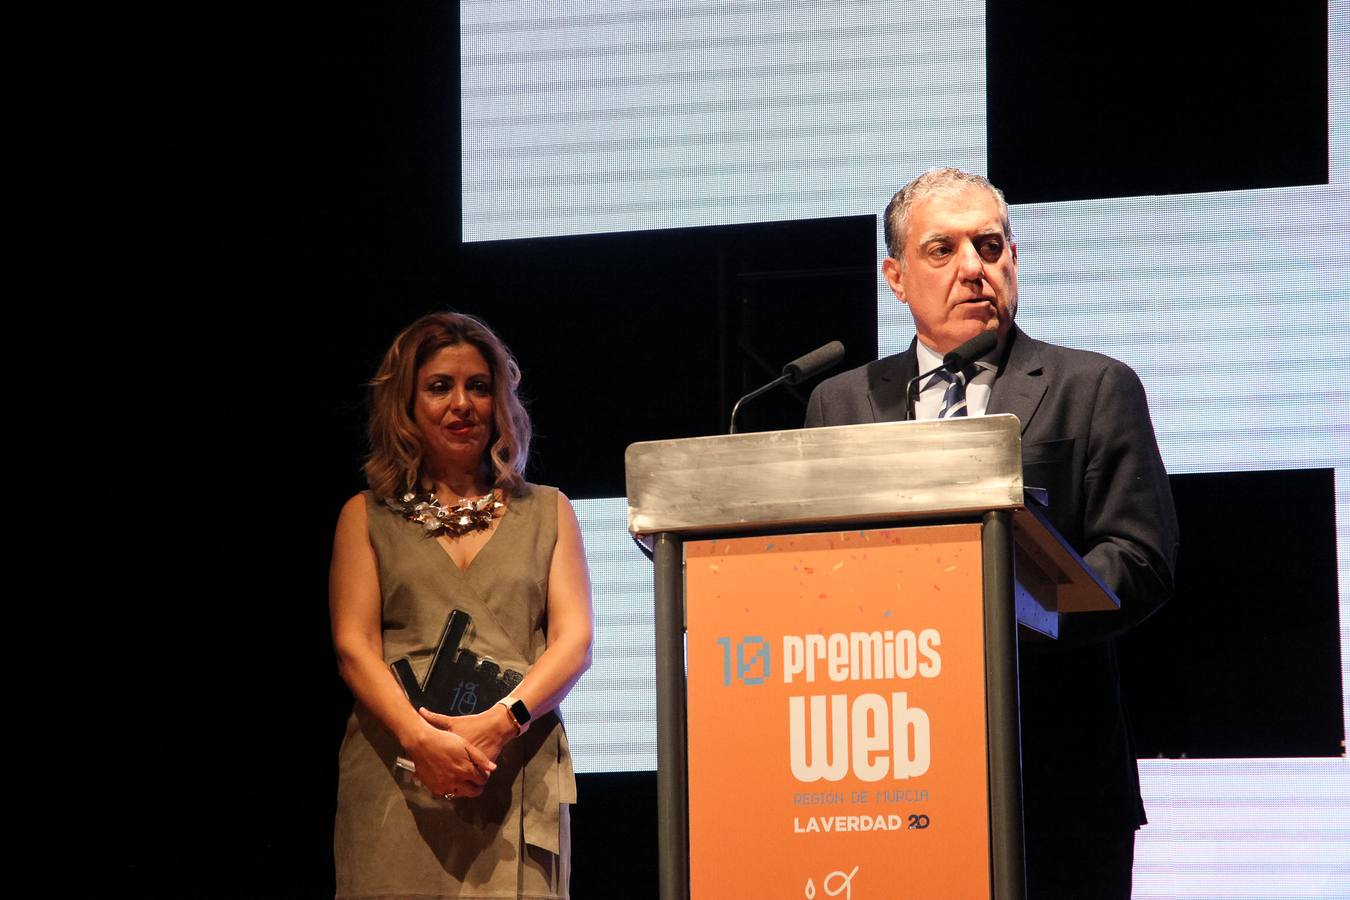 Los Premios Web, organizados por 'laverdad.es', cerraron este jueves por la noche su X edición en una gala celebrada en el auditorio Víctor Villegas